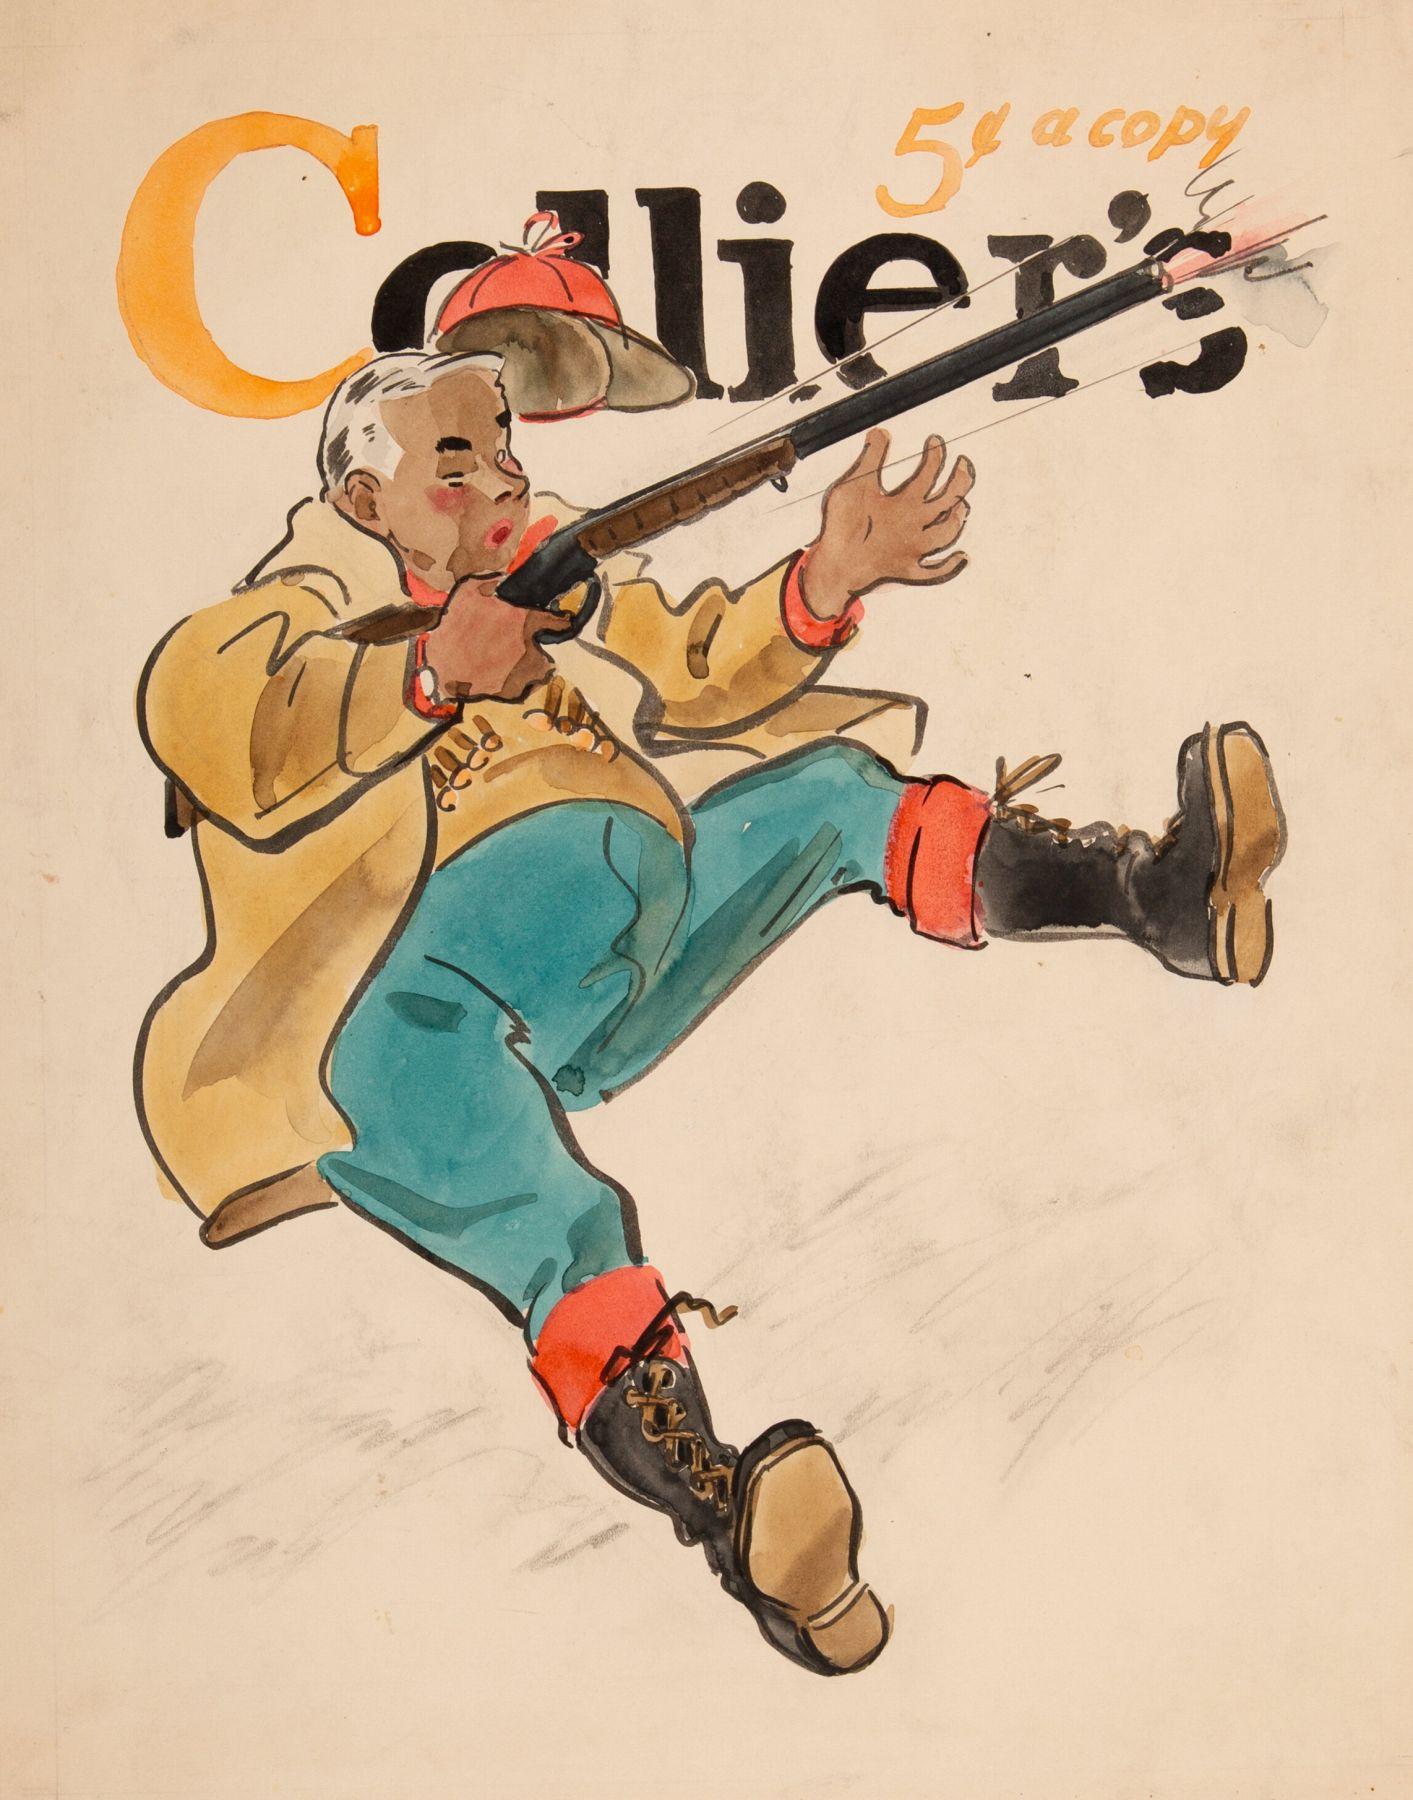 Preliminary Cover, Collier's Magazine